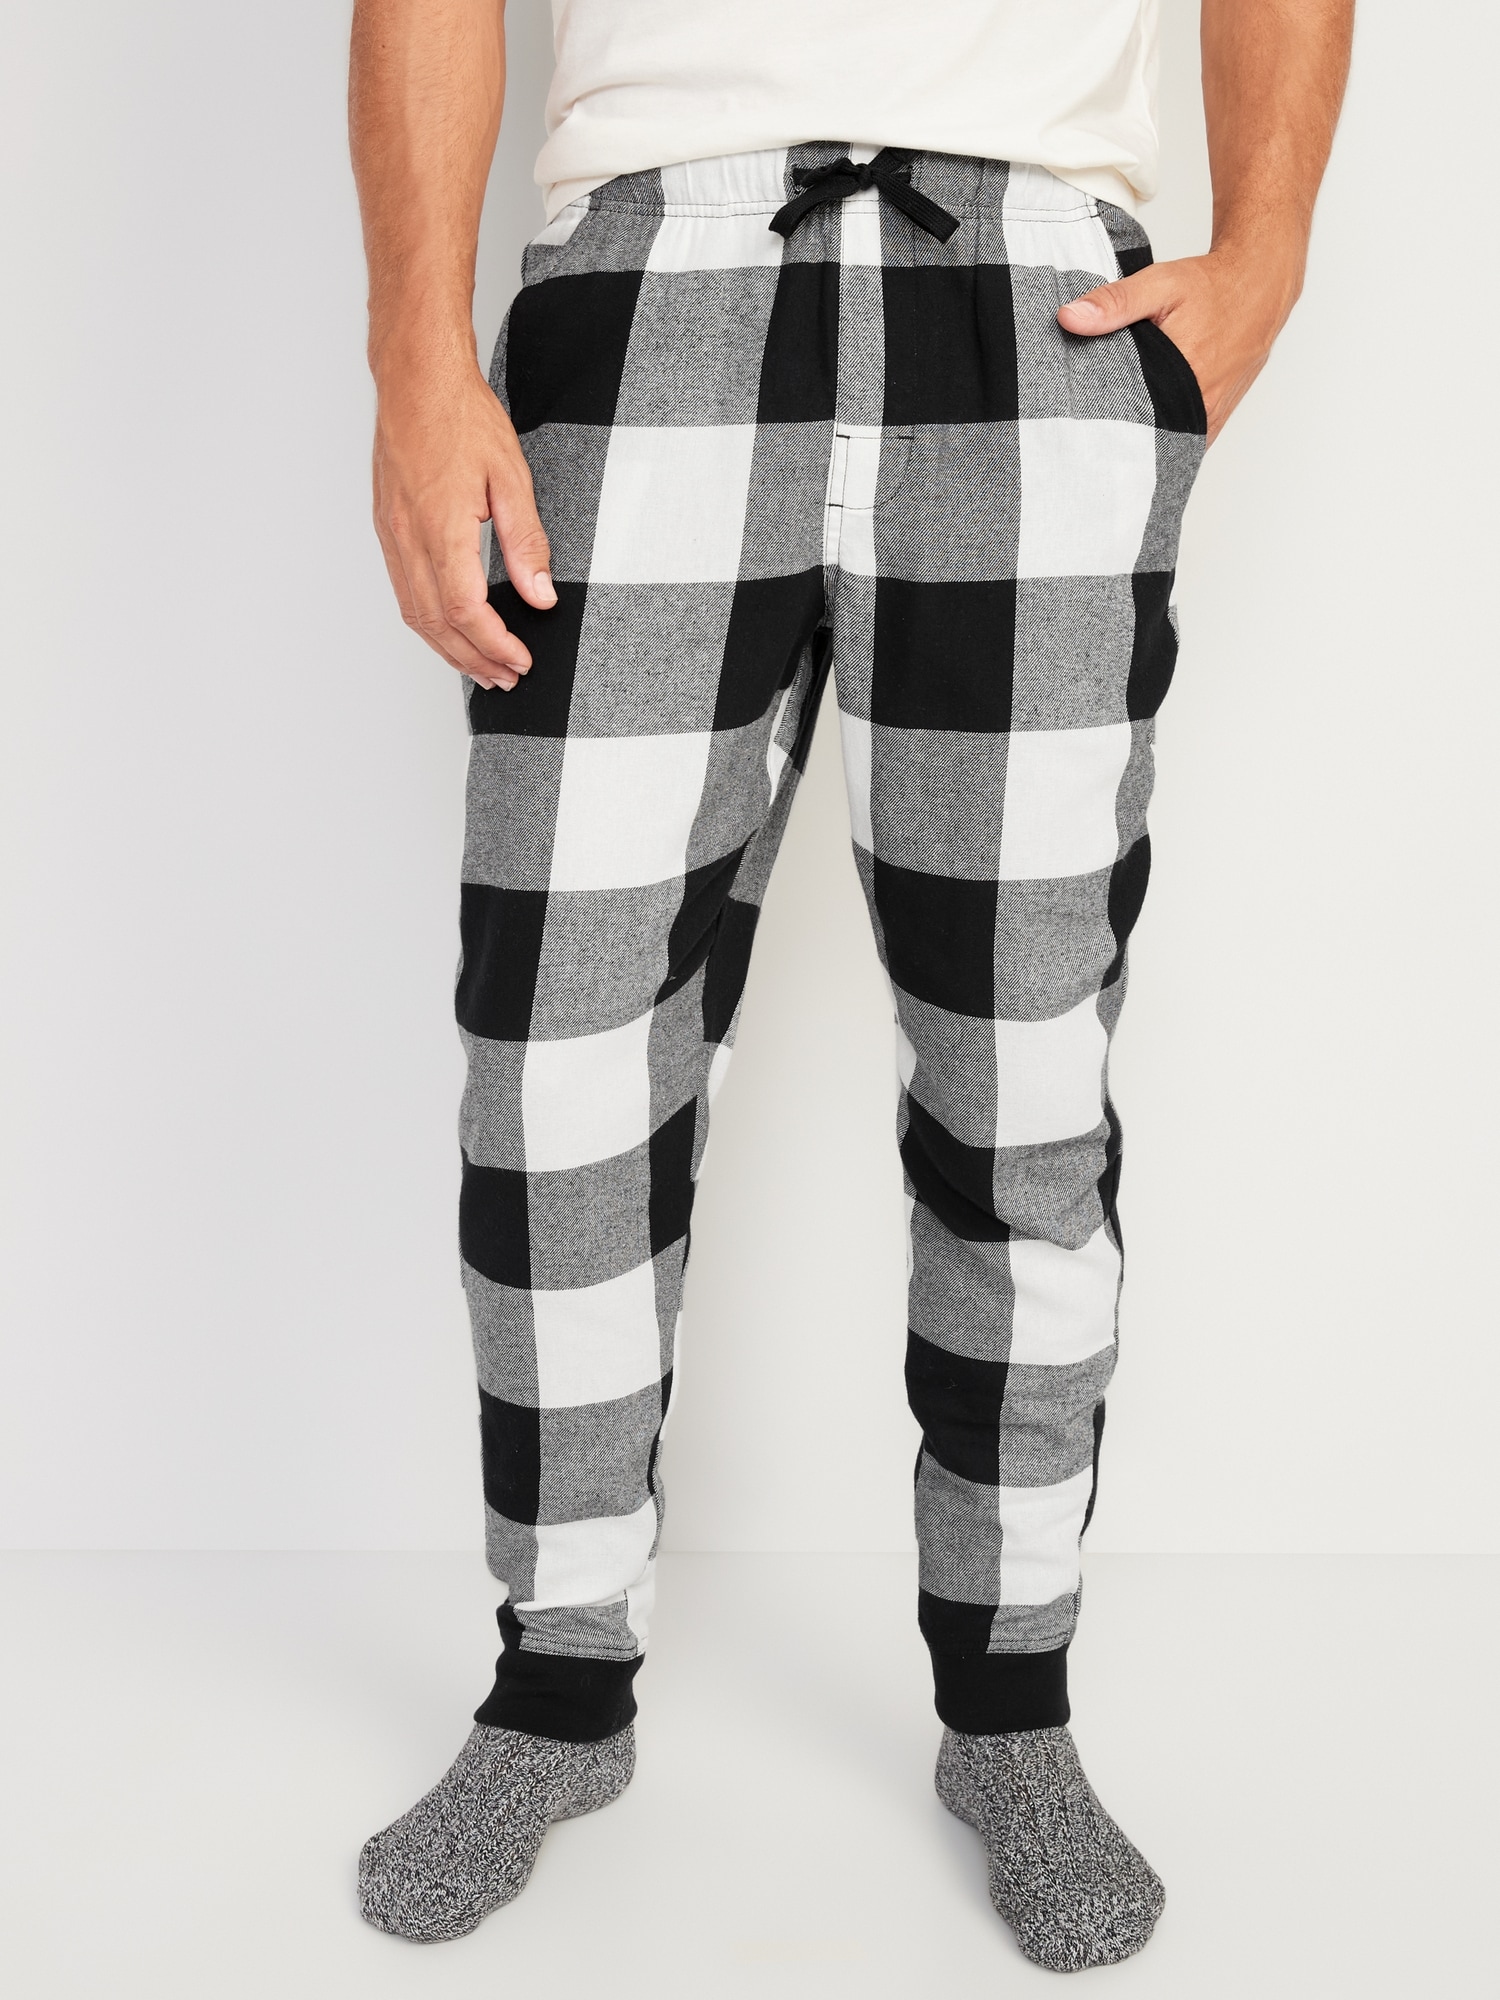 JOE BOXER Men's Moisture-Wicking 3-Pack Sleepwear Set: Pajama